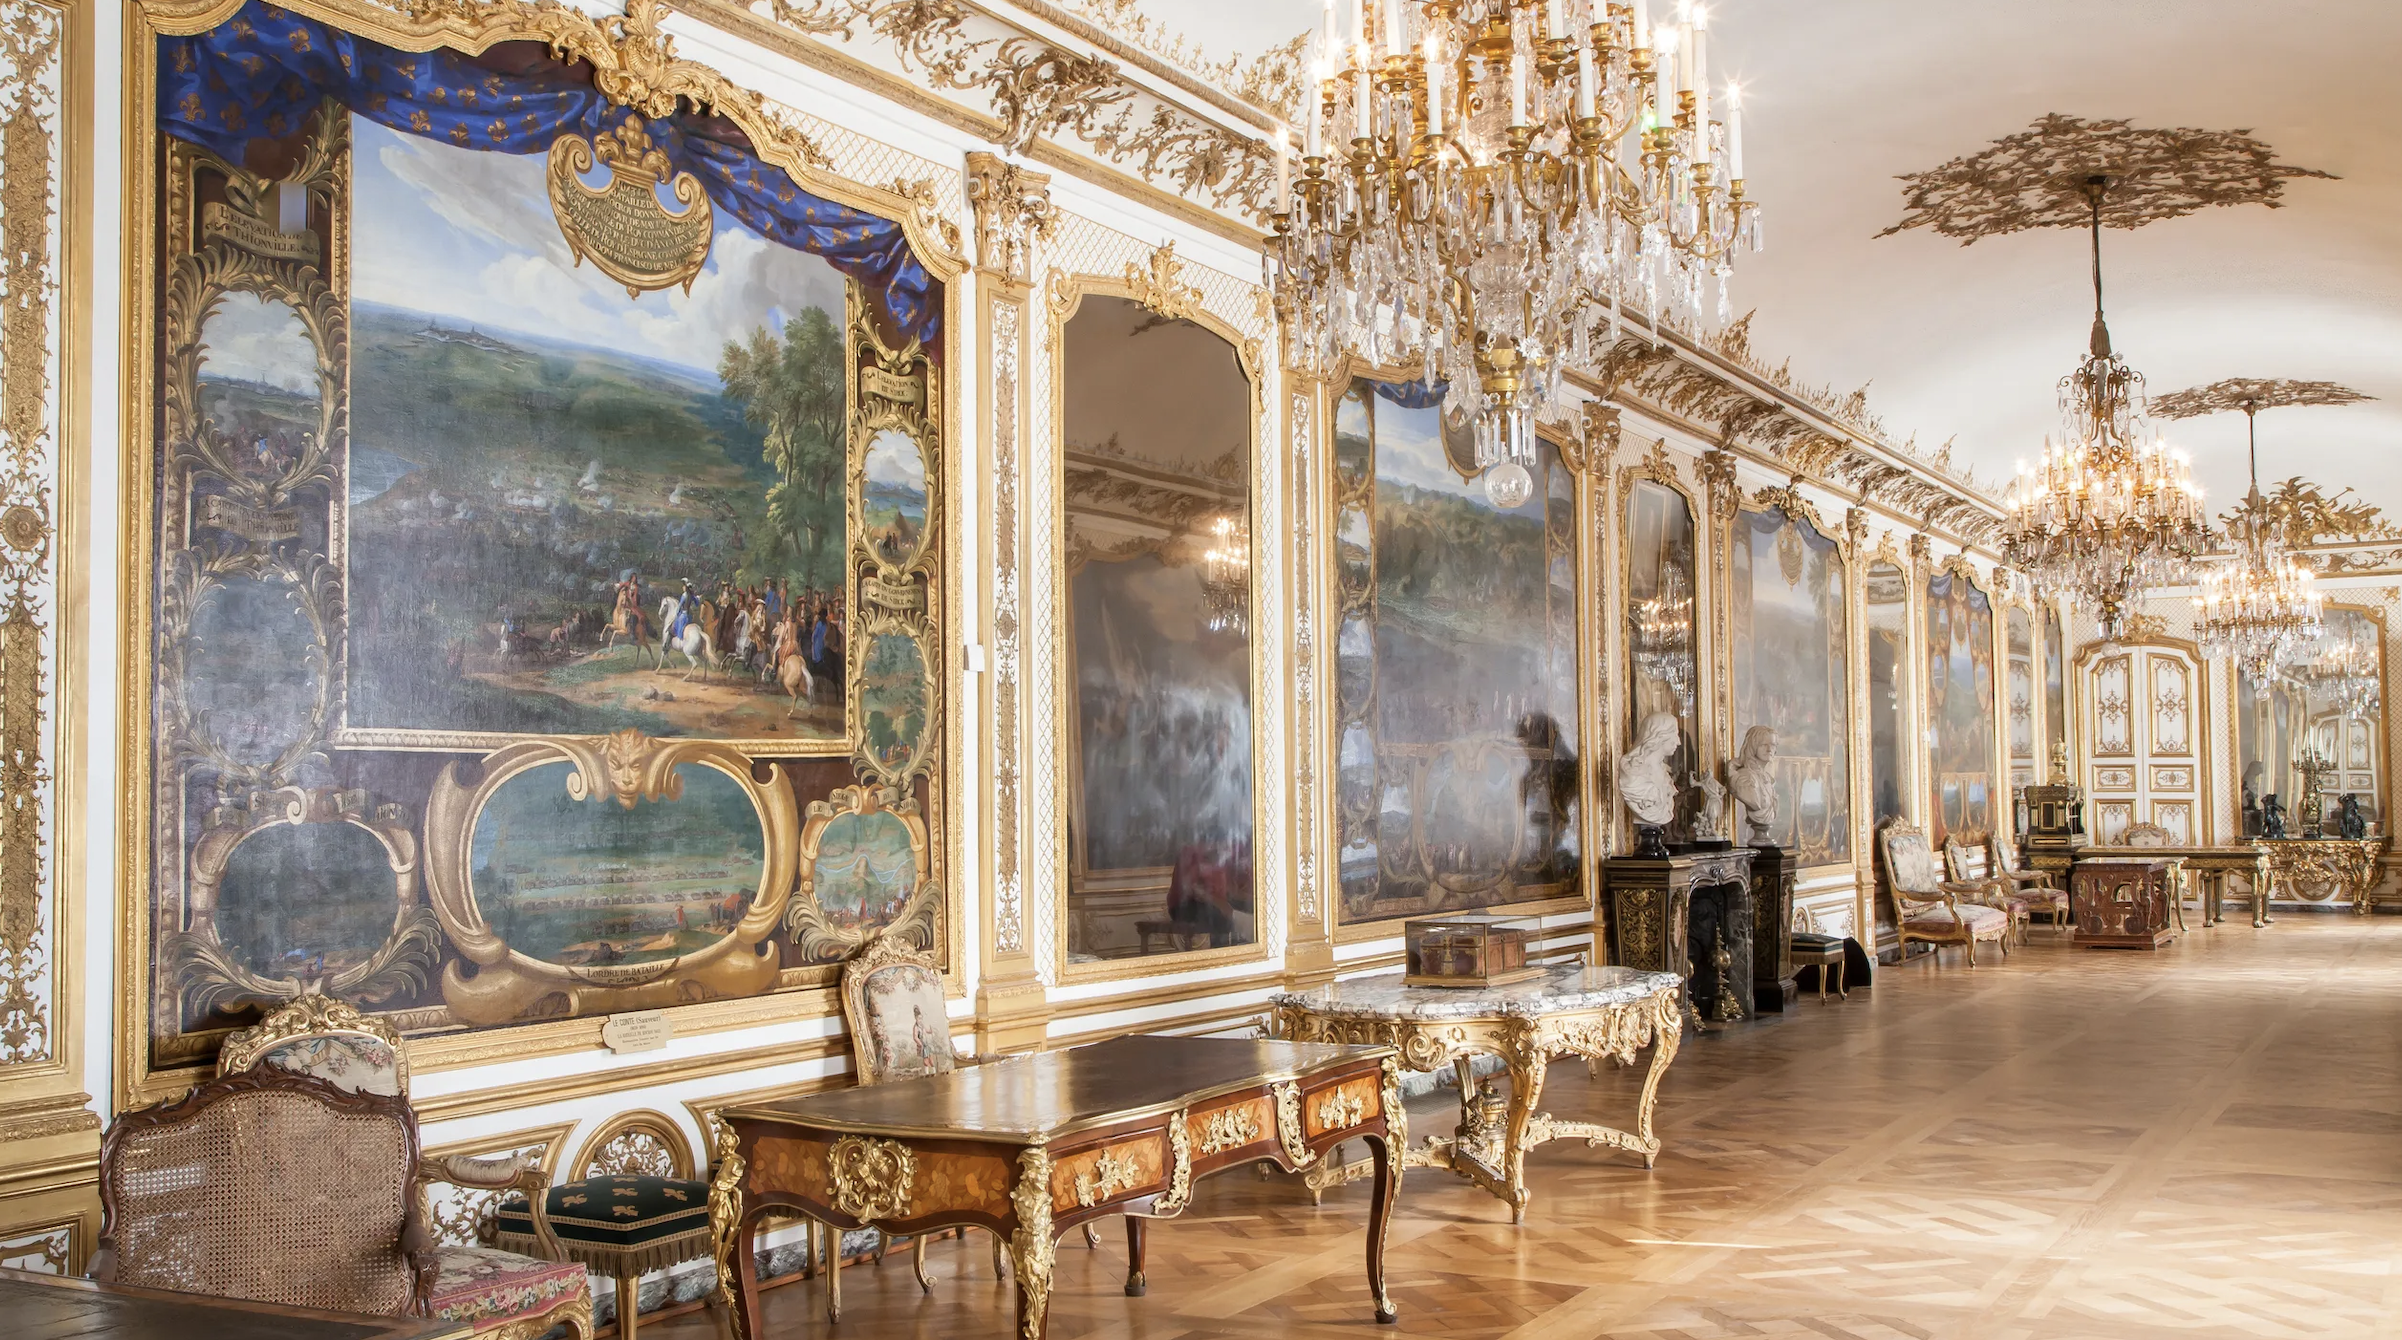 Chateau de Chantilly castle interiors France